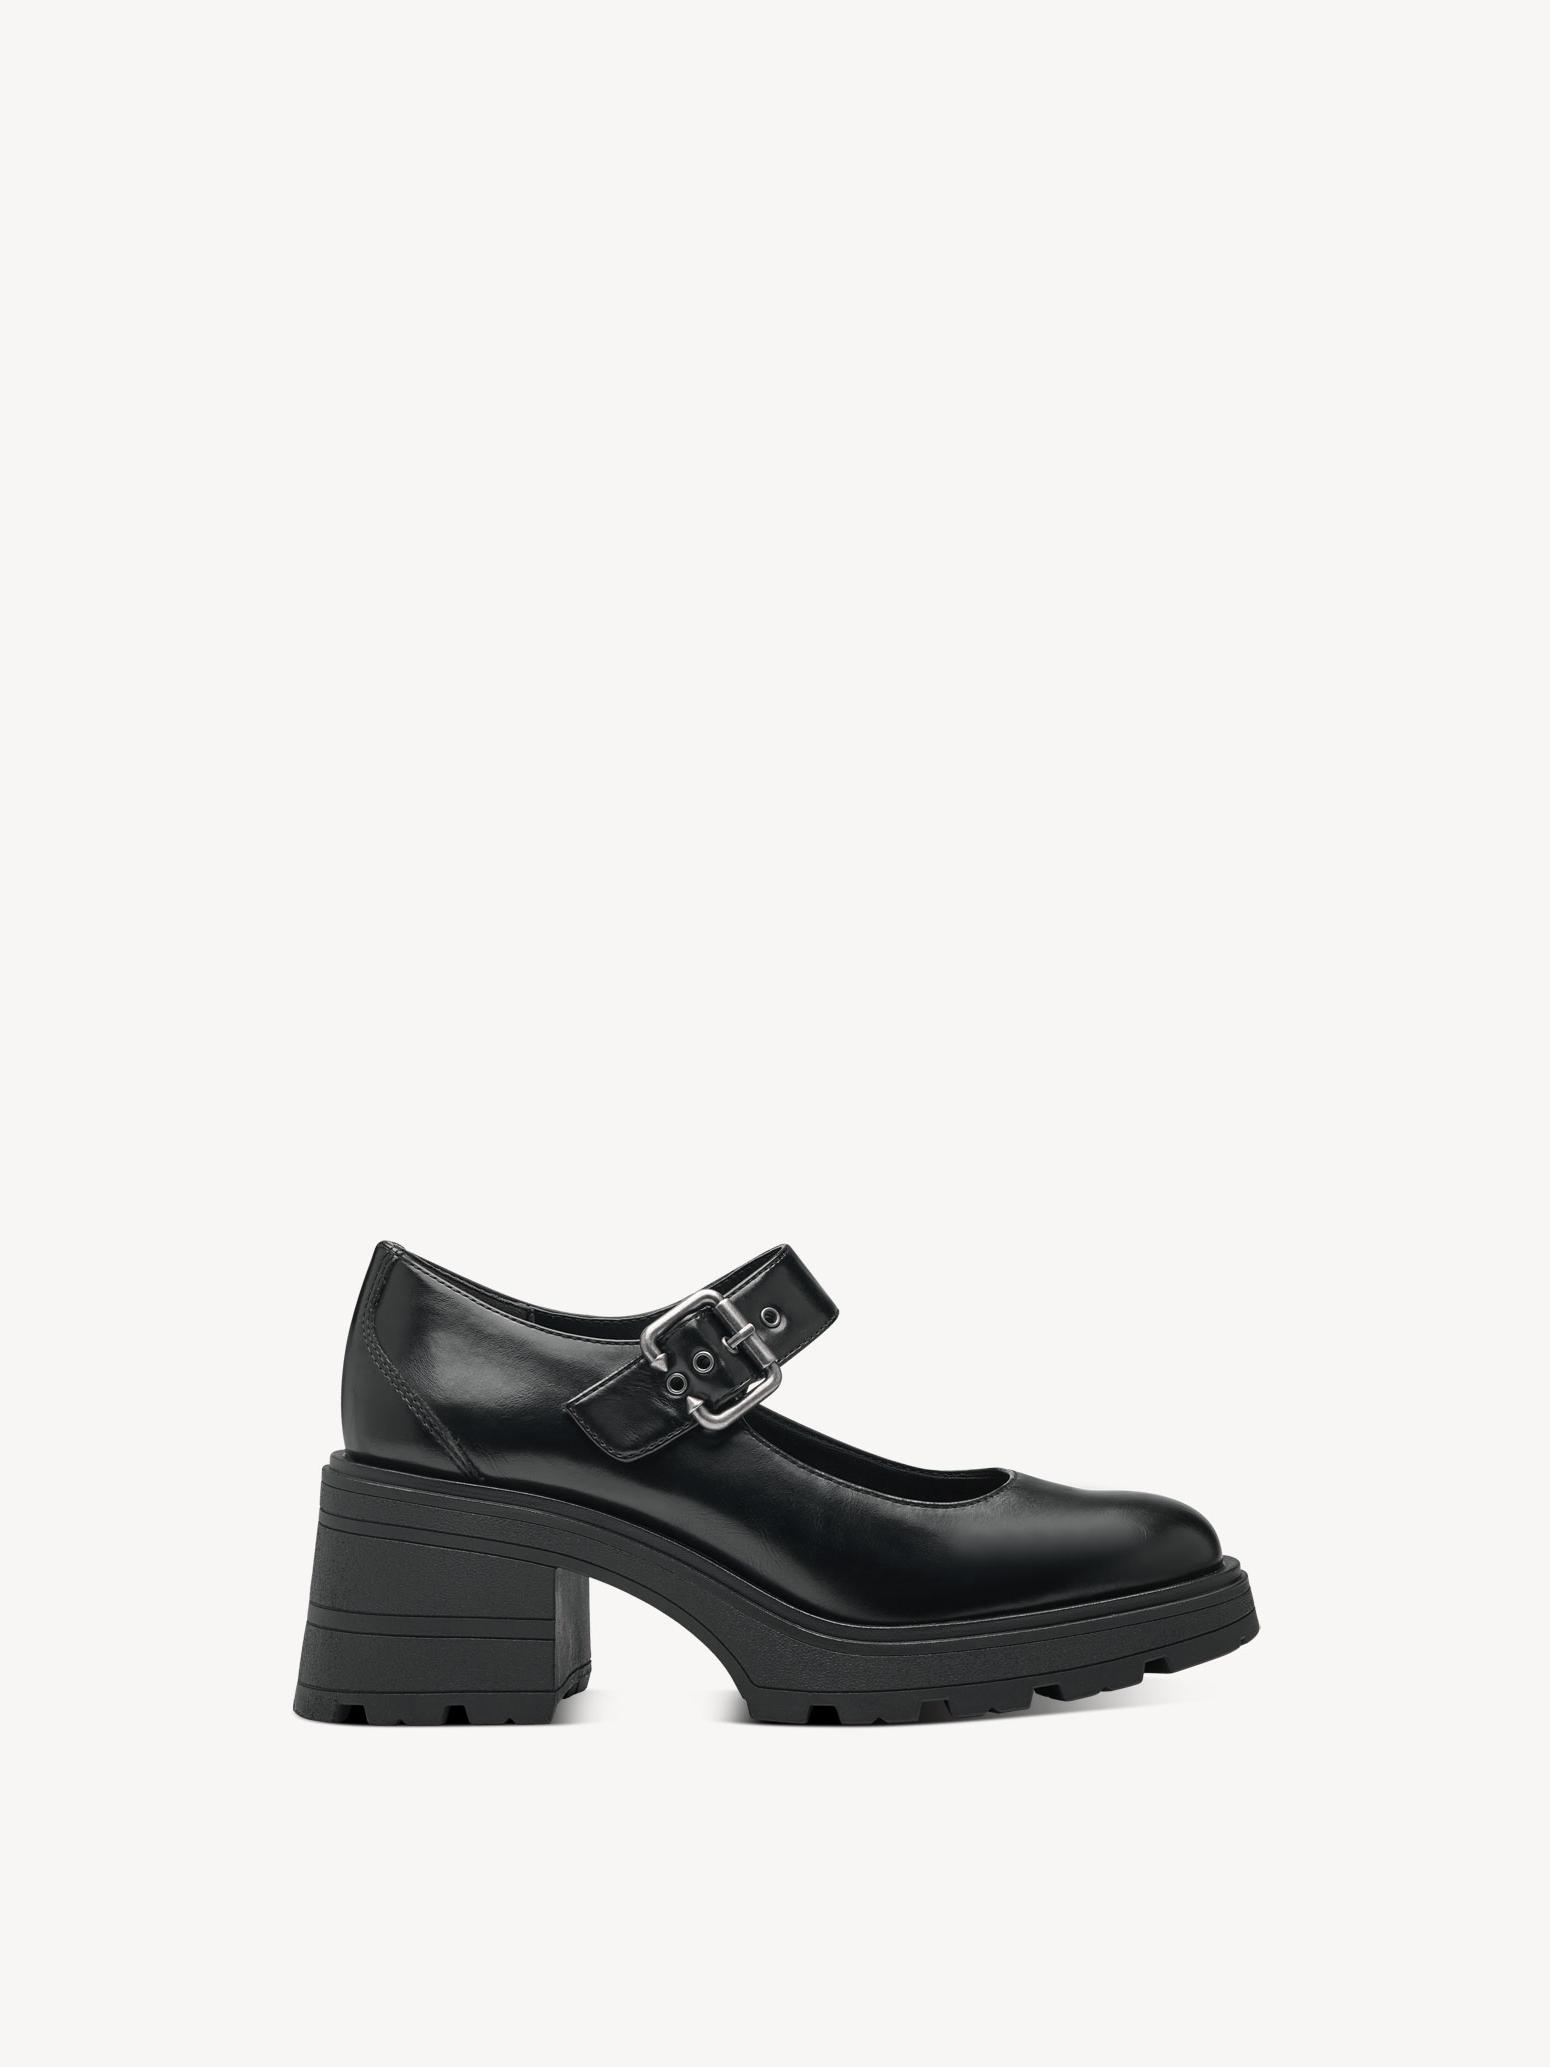 Туфли женские Tamaris 1-24430-41-001 черные 38 RU